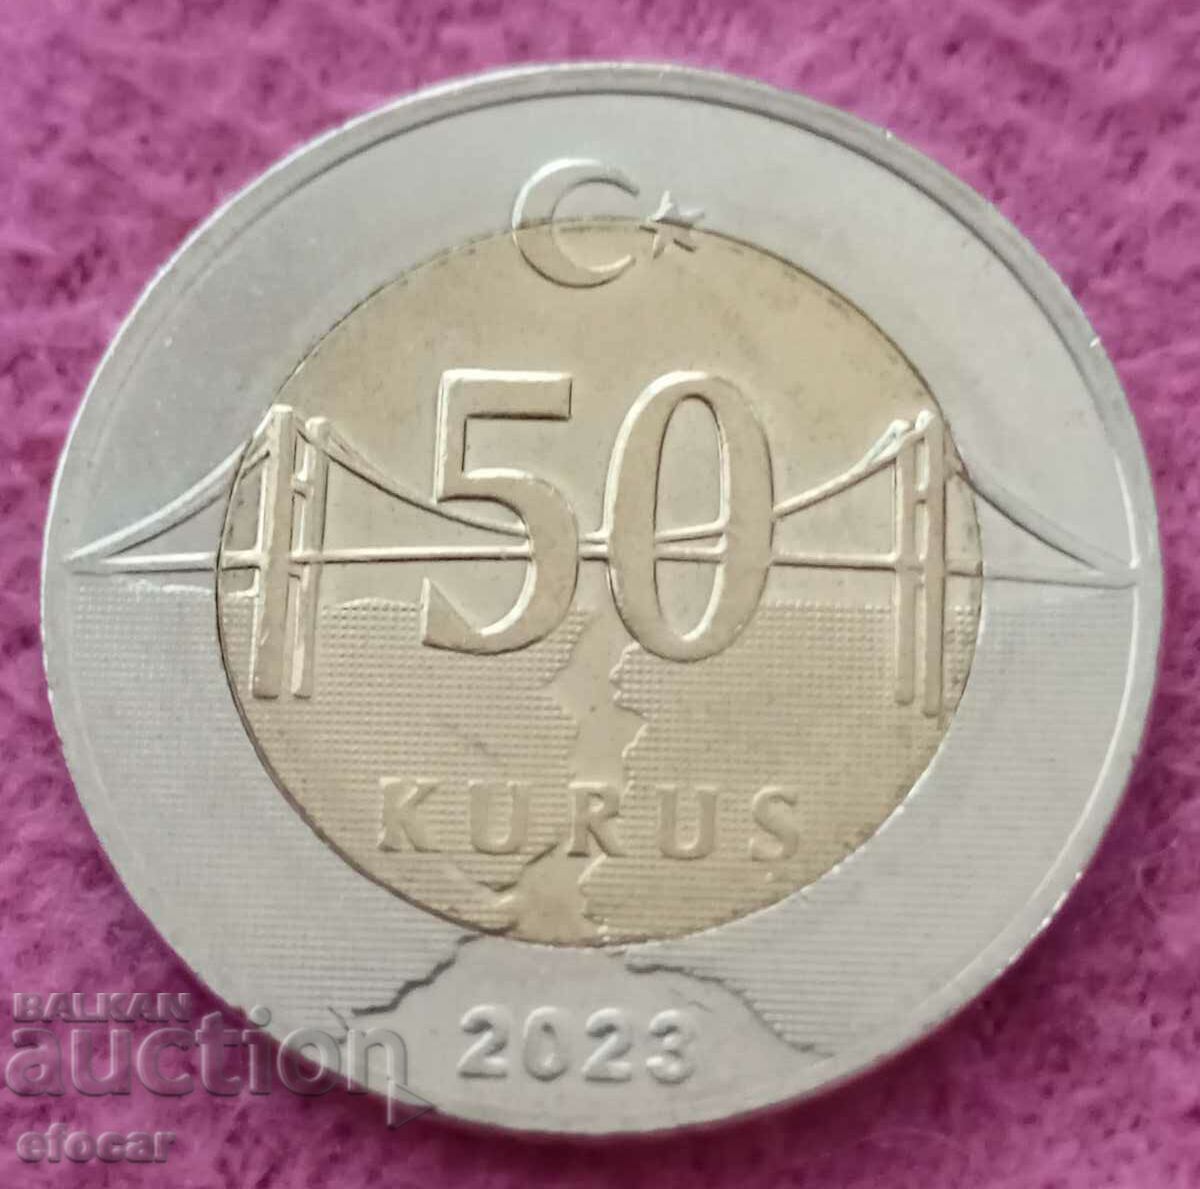 50 kuruş Turkey 2023 years